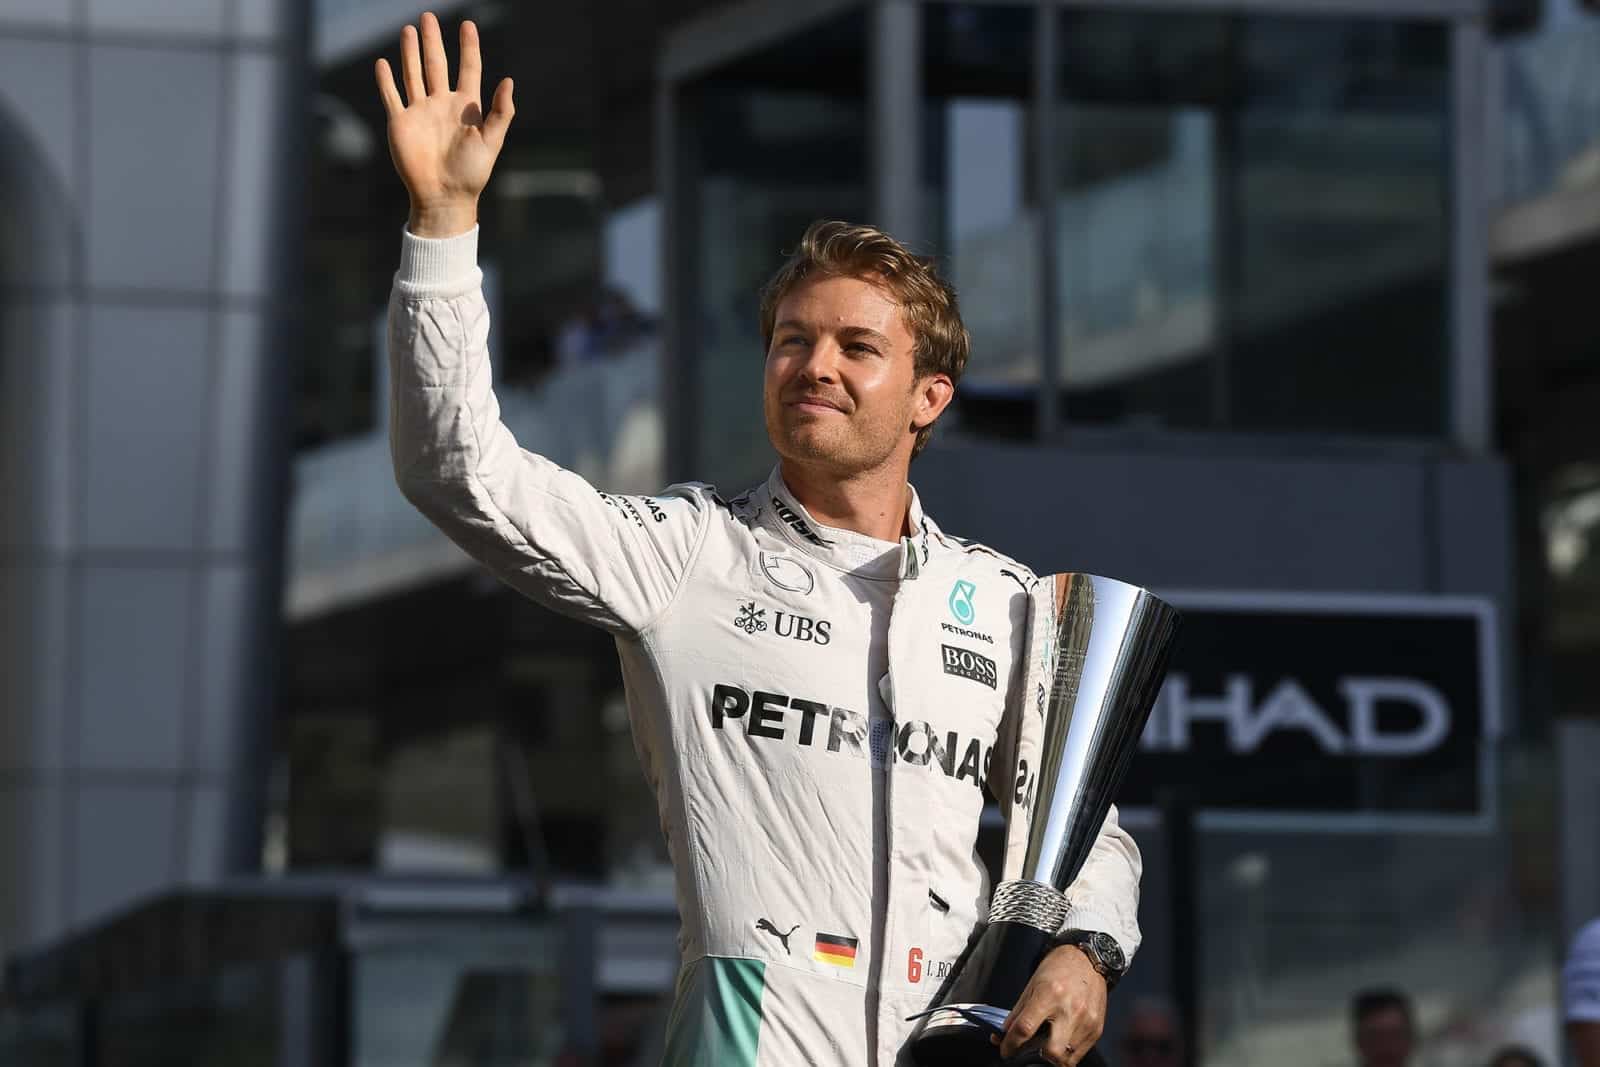 Nico Rosberg Mercedes 2016 Abu Dhabi Grand Prix